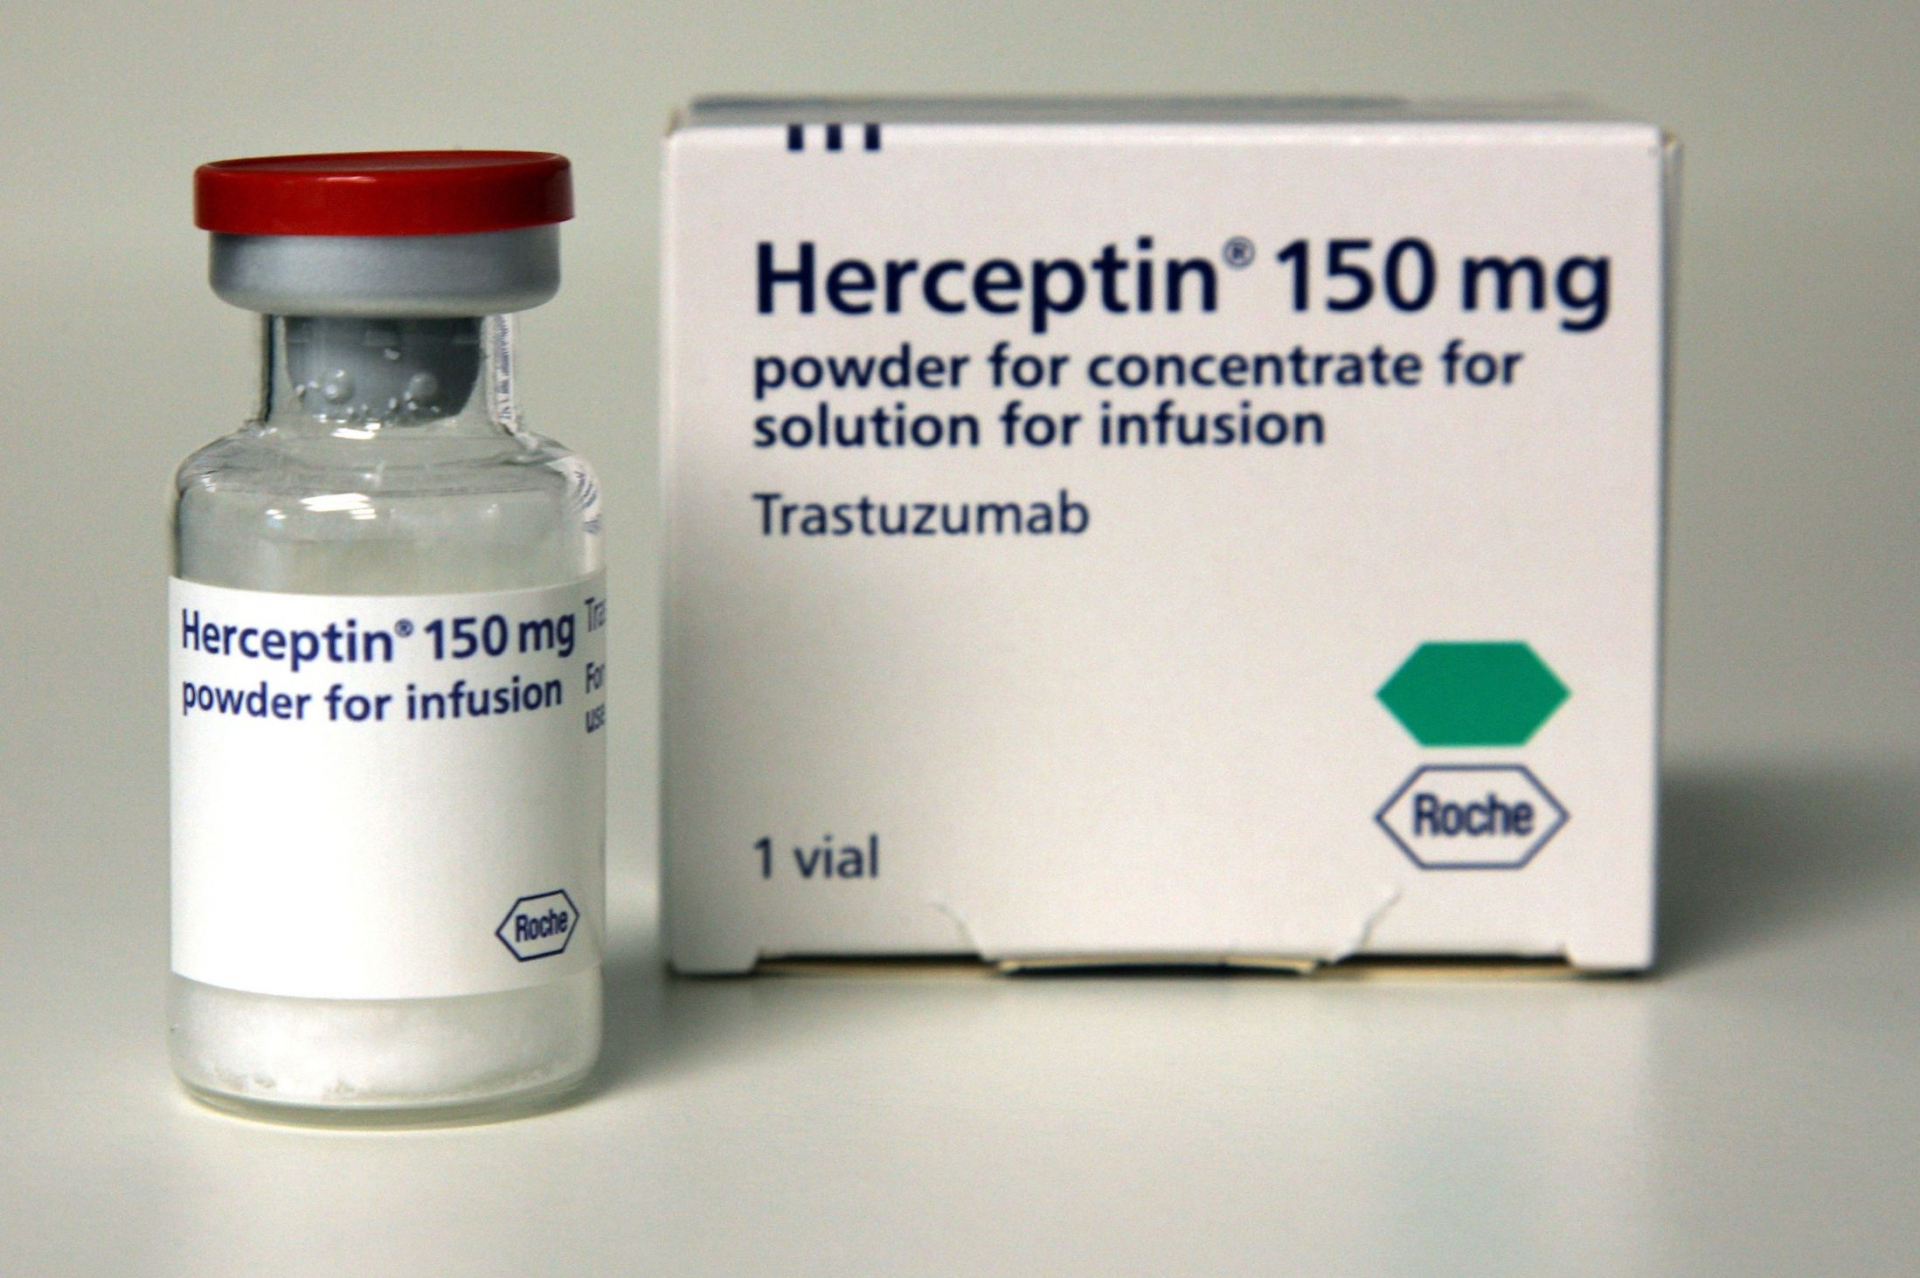 Thuốc Herceptin giúp giảm thời gian điều trị một thể ung thư vú từ 12 tháng xuống còn 6 tháng